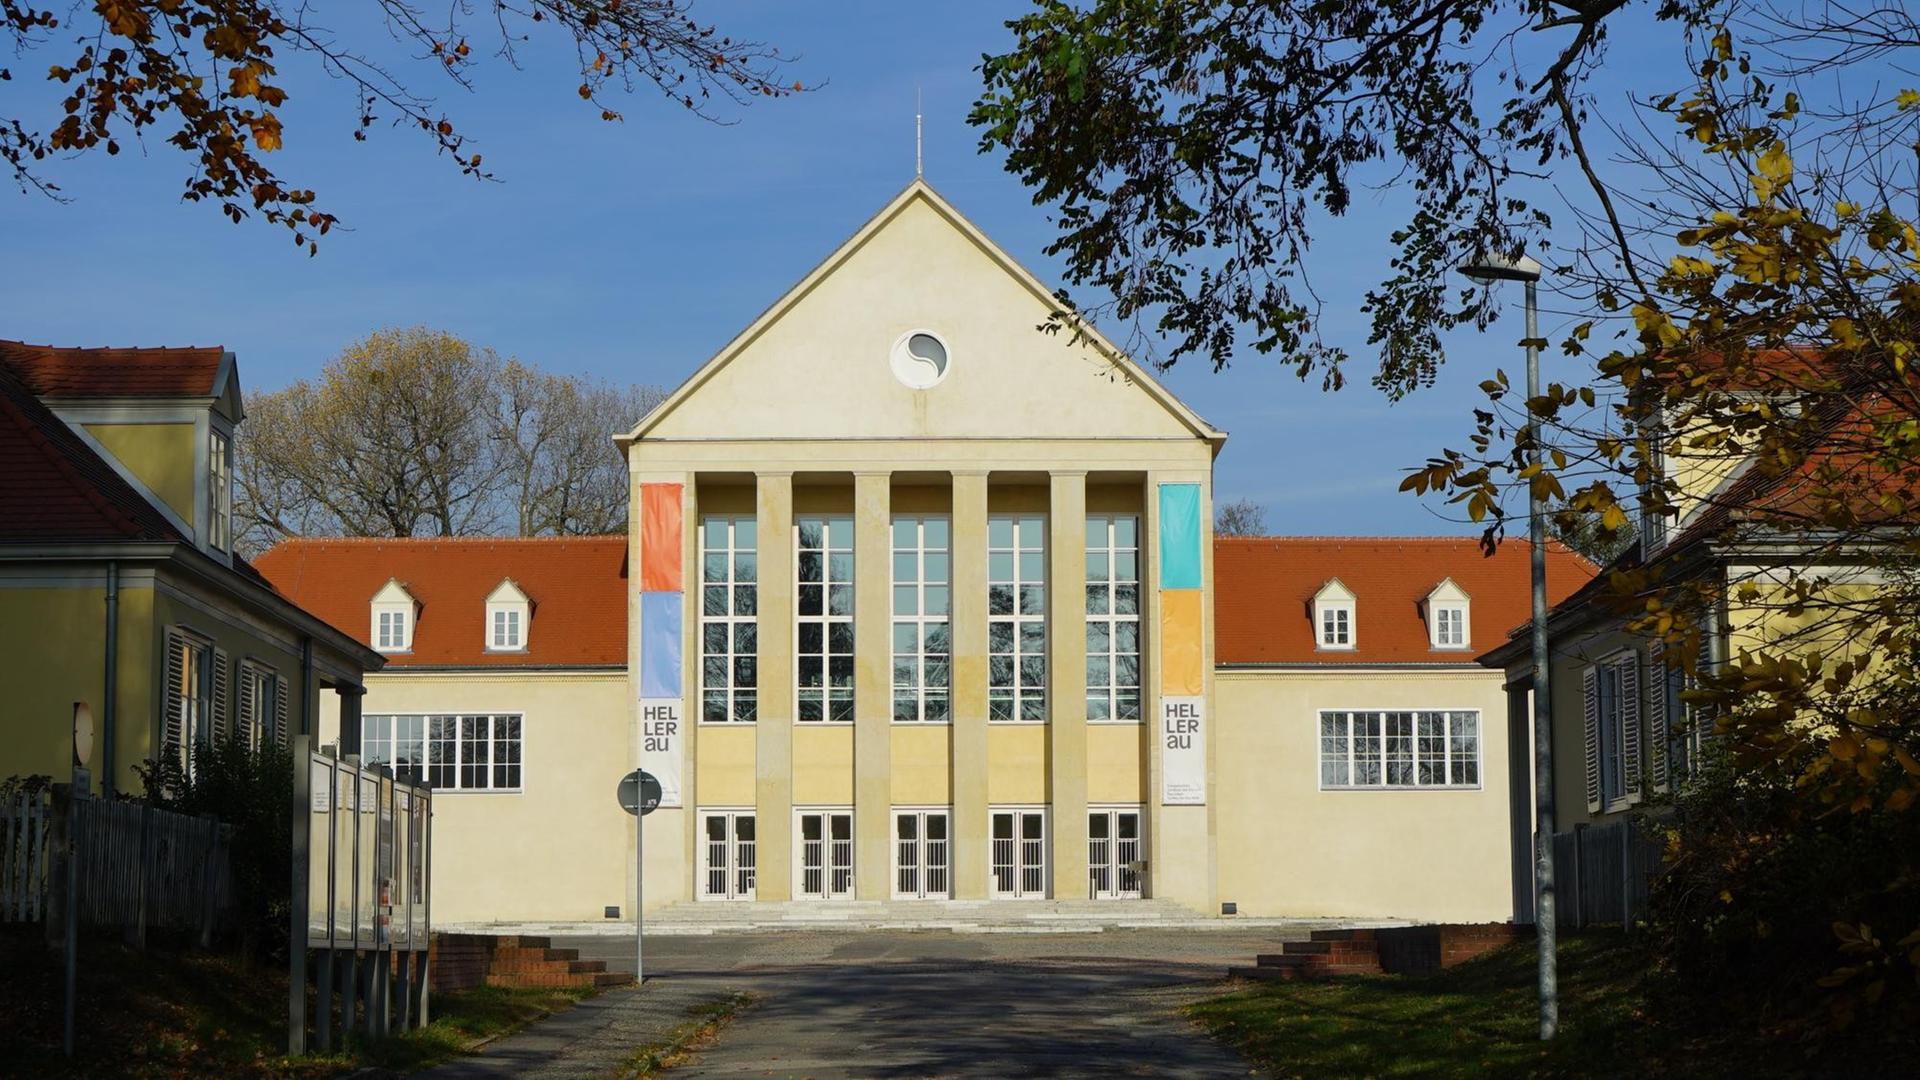 Das Festspielhaus Hellerau ist ein großes Gebäude mit vielen Fenstern an der Front. Die Fassade ist hellgelb, man sieht durch Blätter hindurch auf das Haus.